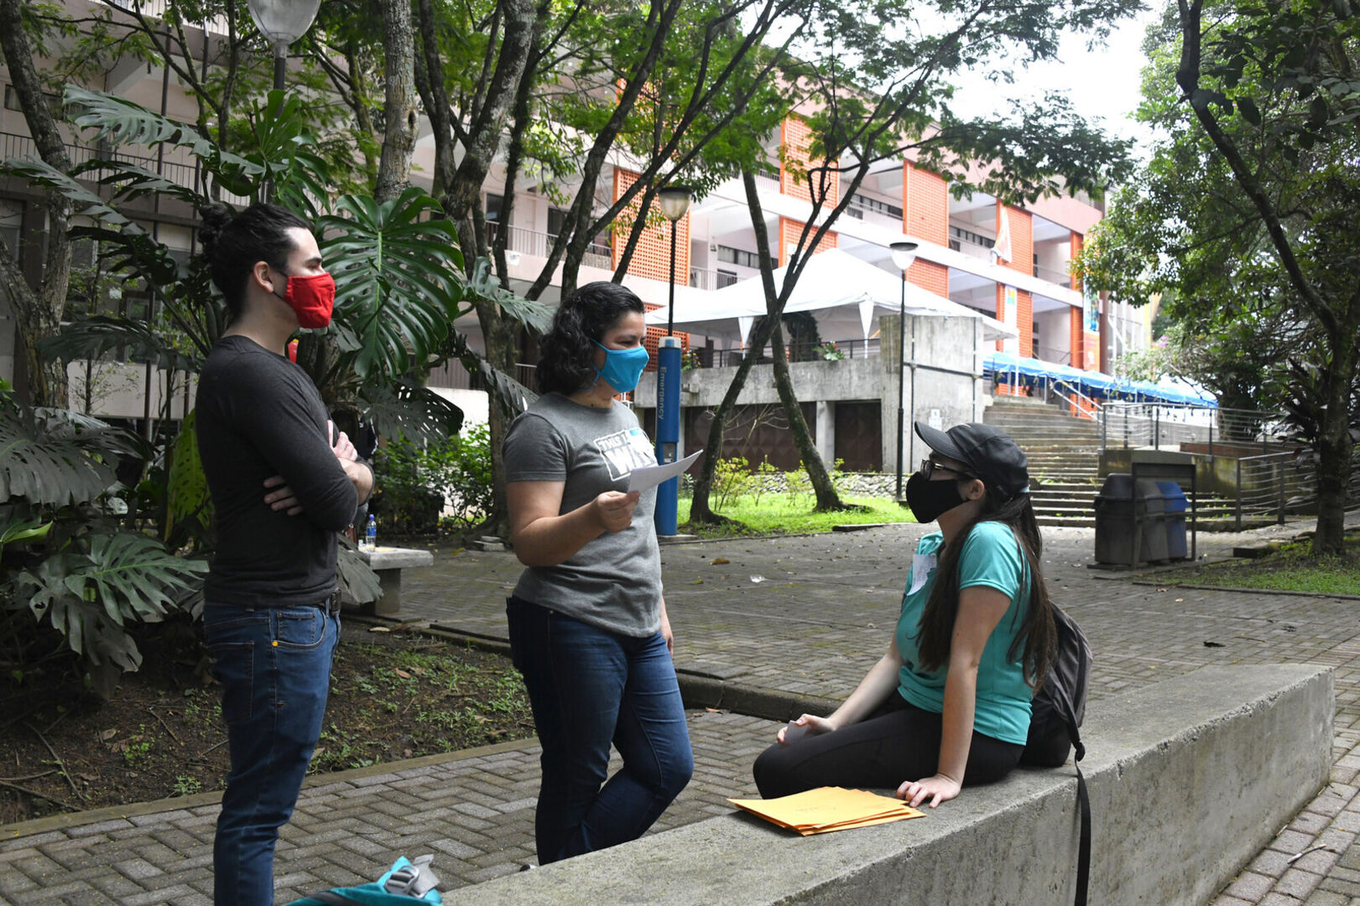 La Universidad de Costa Rica regresará a la presencialidad en las aulas el lunes 28 de marzo …